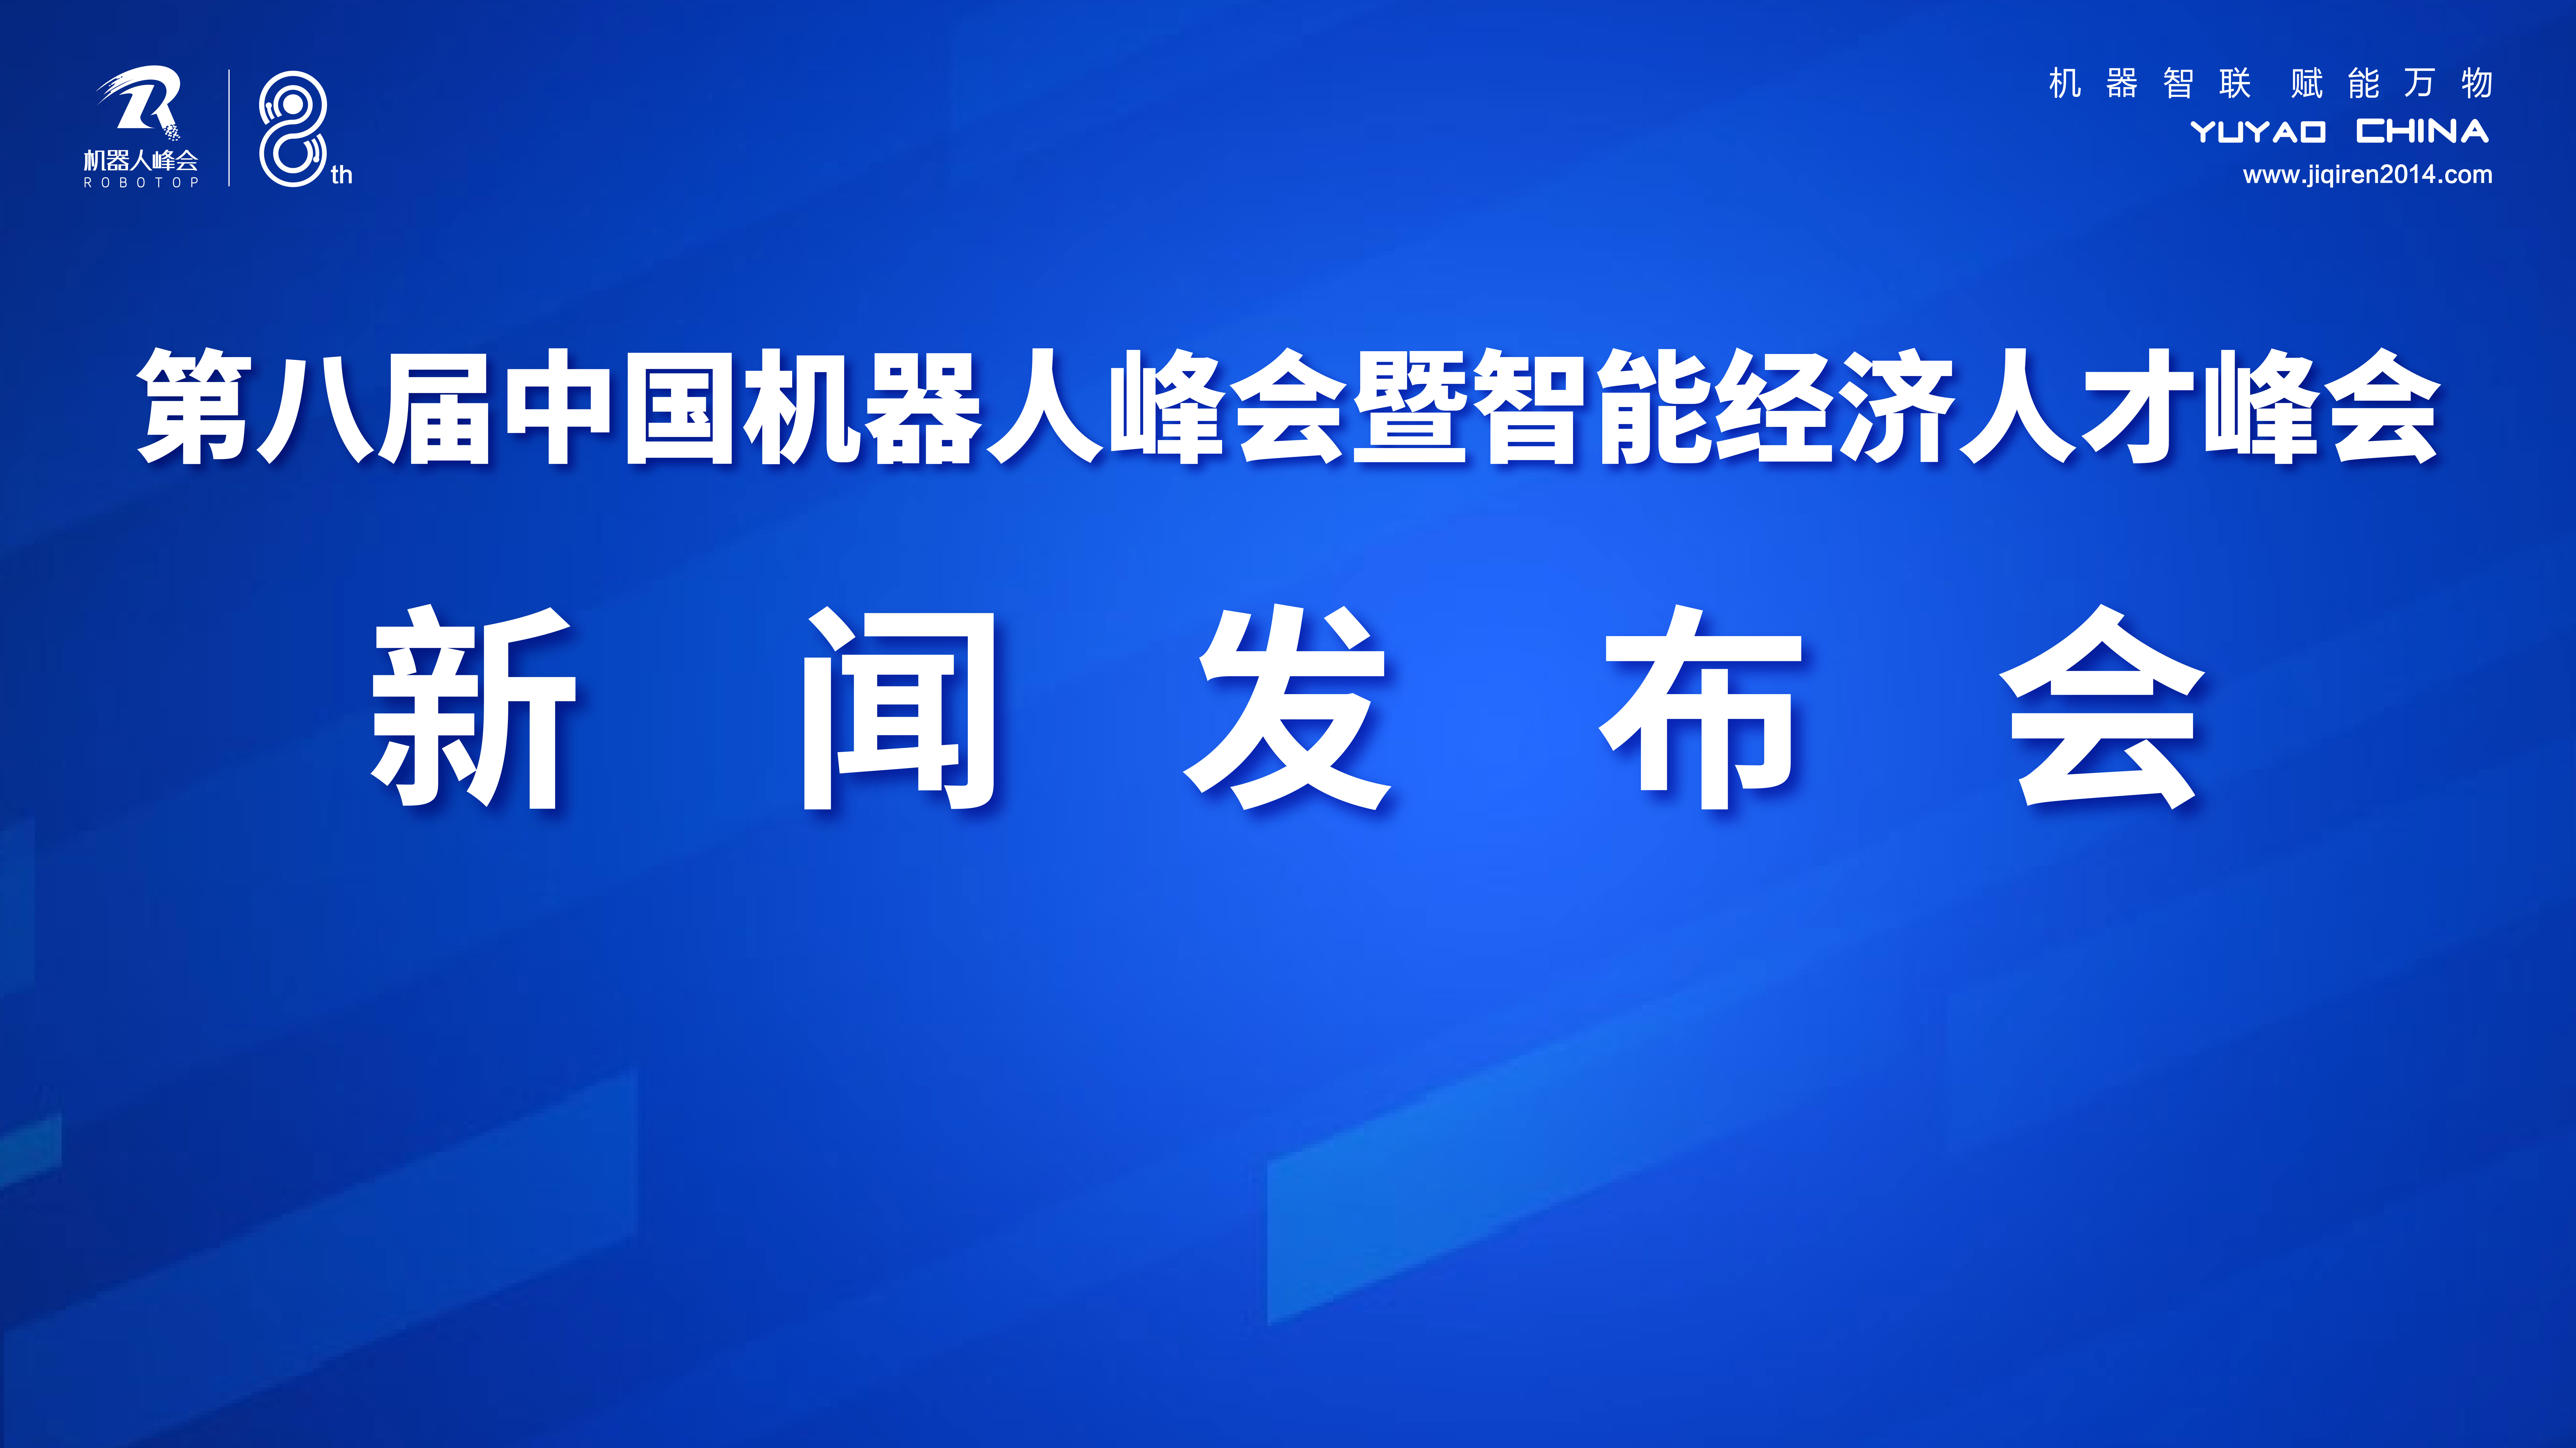 第八届中国机器人峰会暨智能经济人才峰会将于11月16日至18日在浙江宁波余姚举行